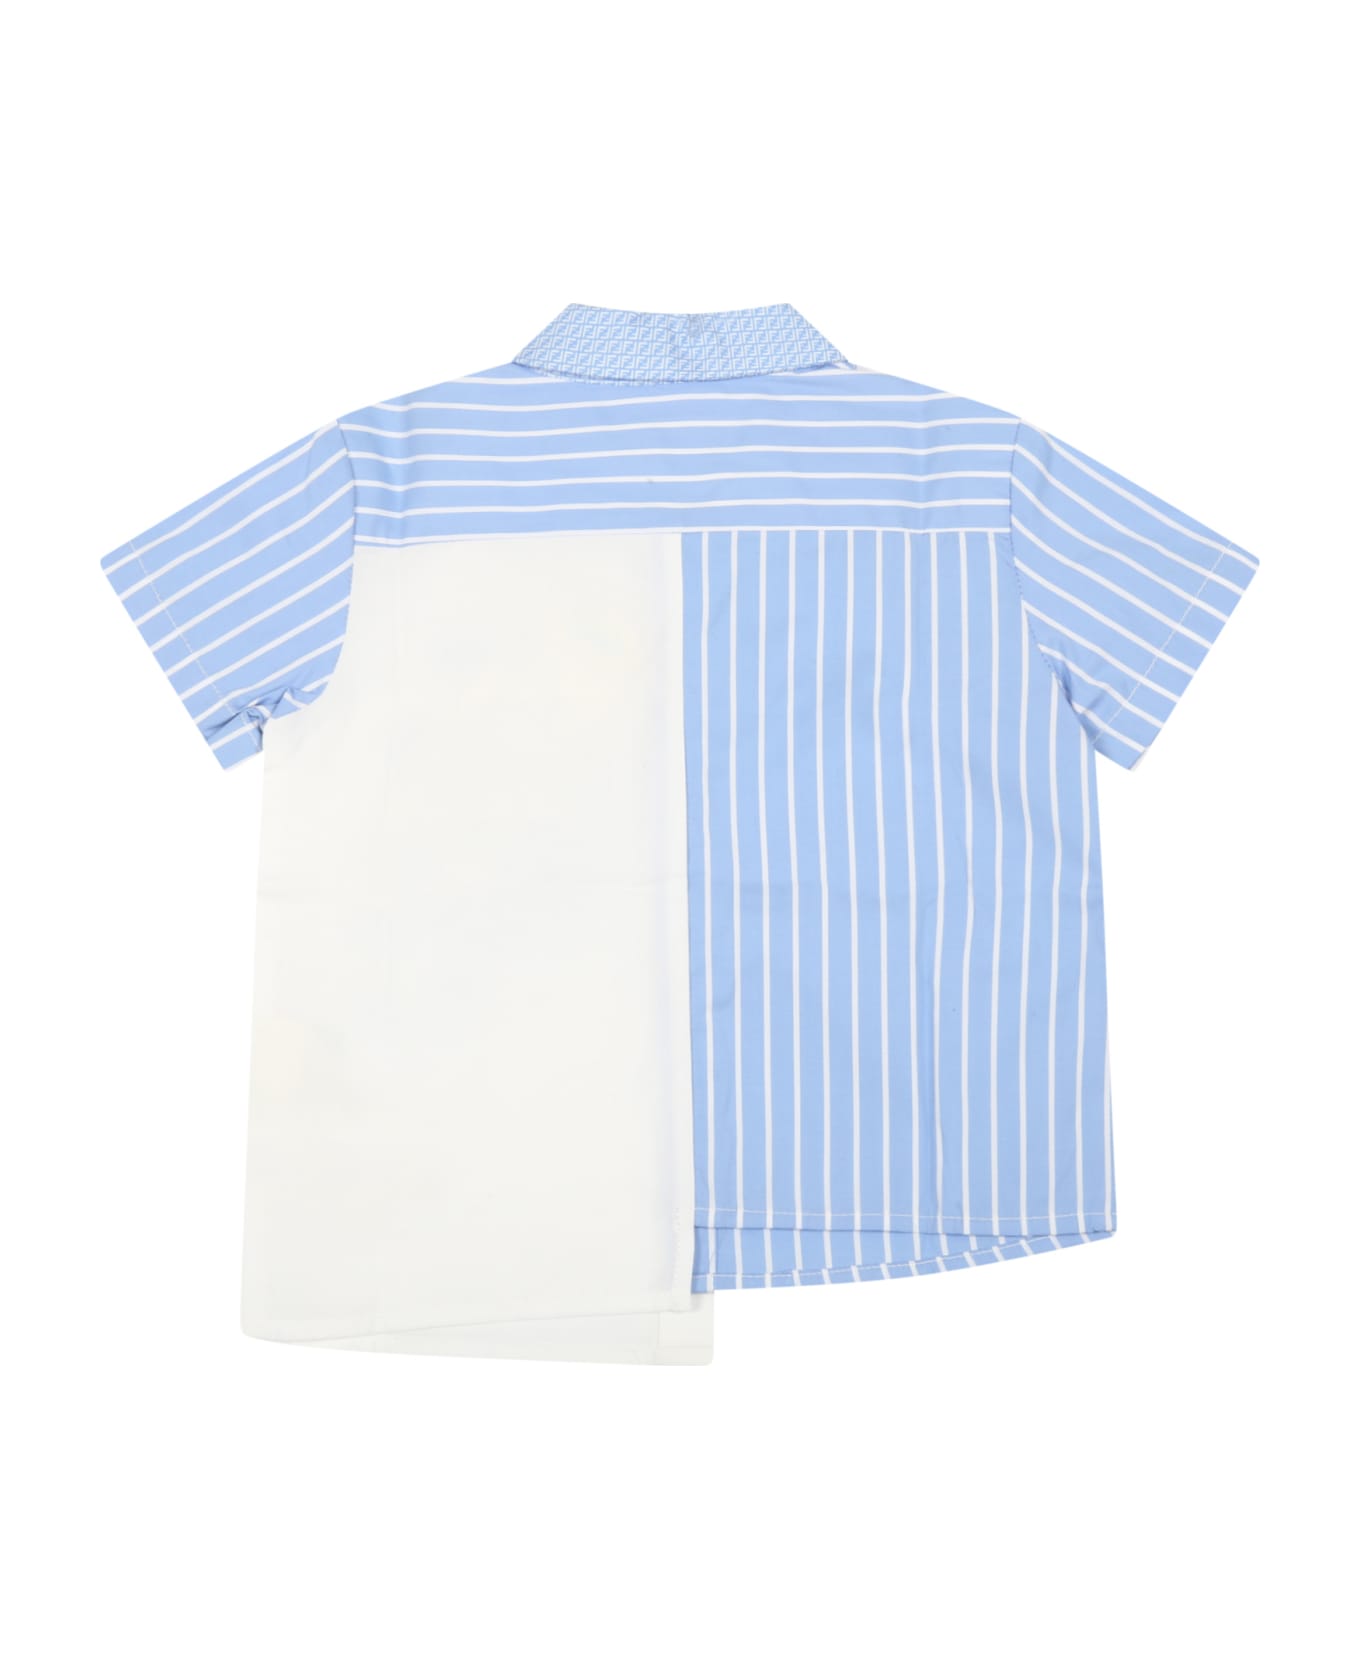 Fendi Multicolor Shirt For Baby Boy With Logos - Multicolor